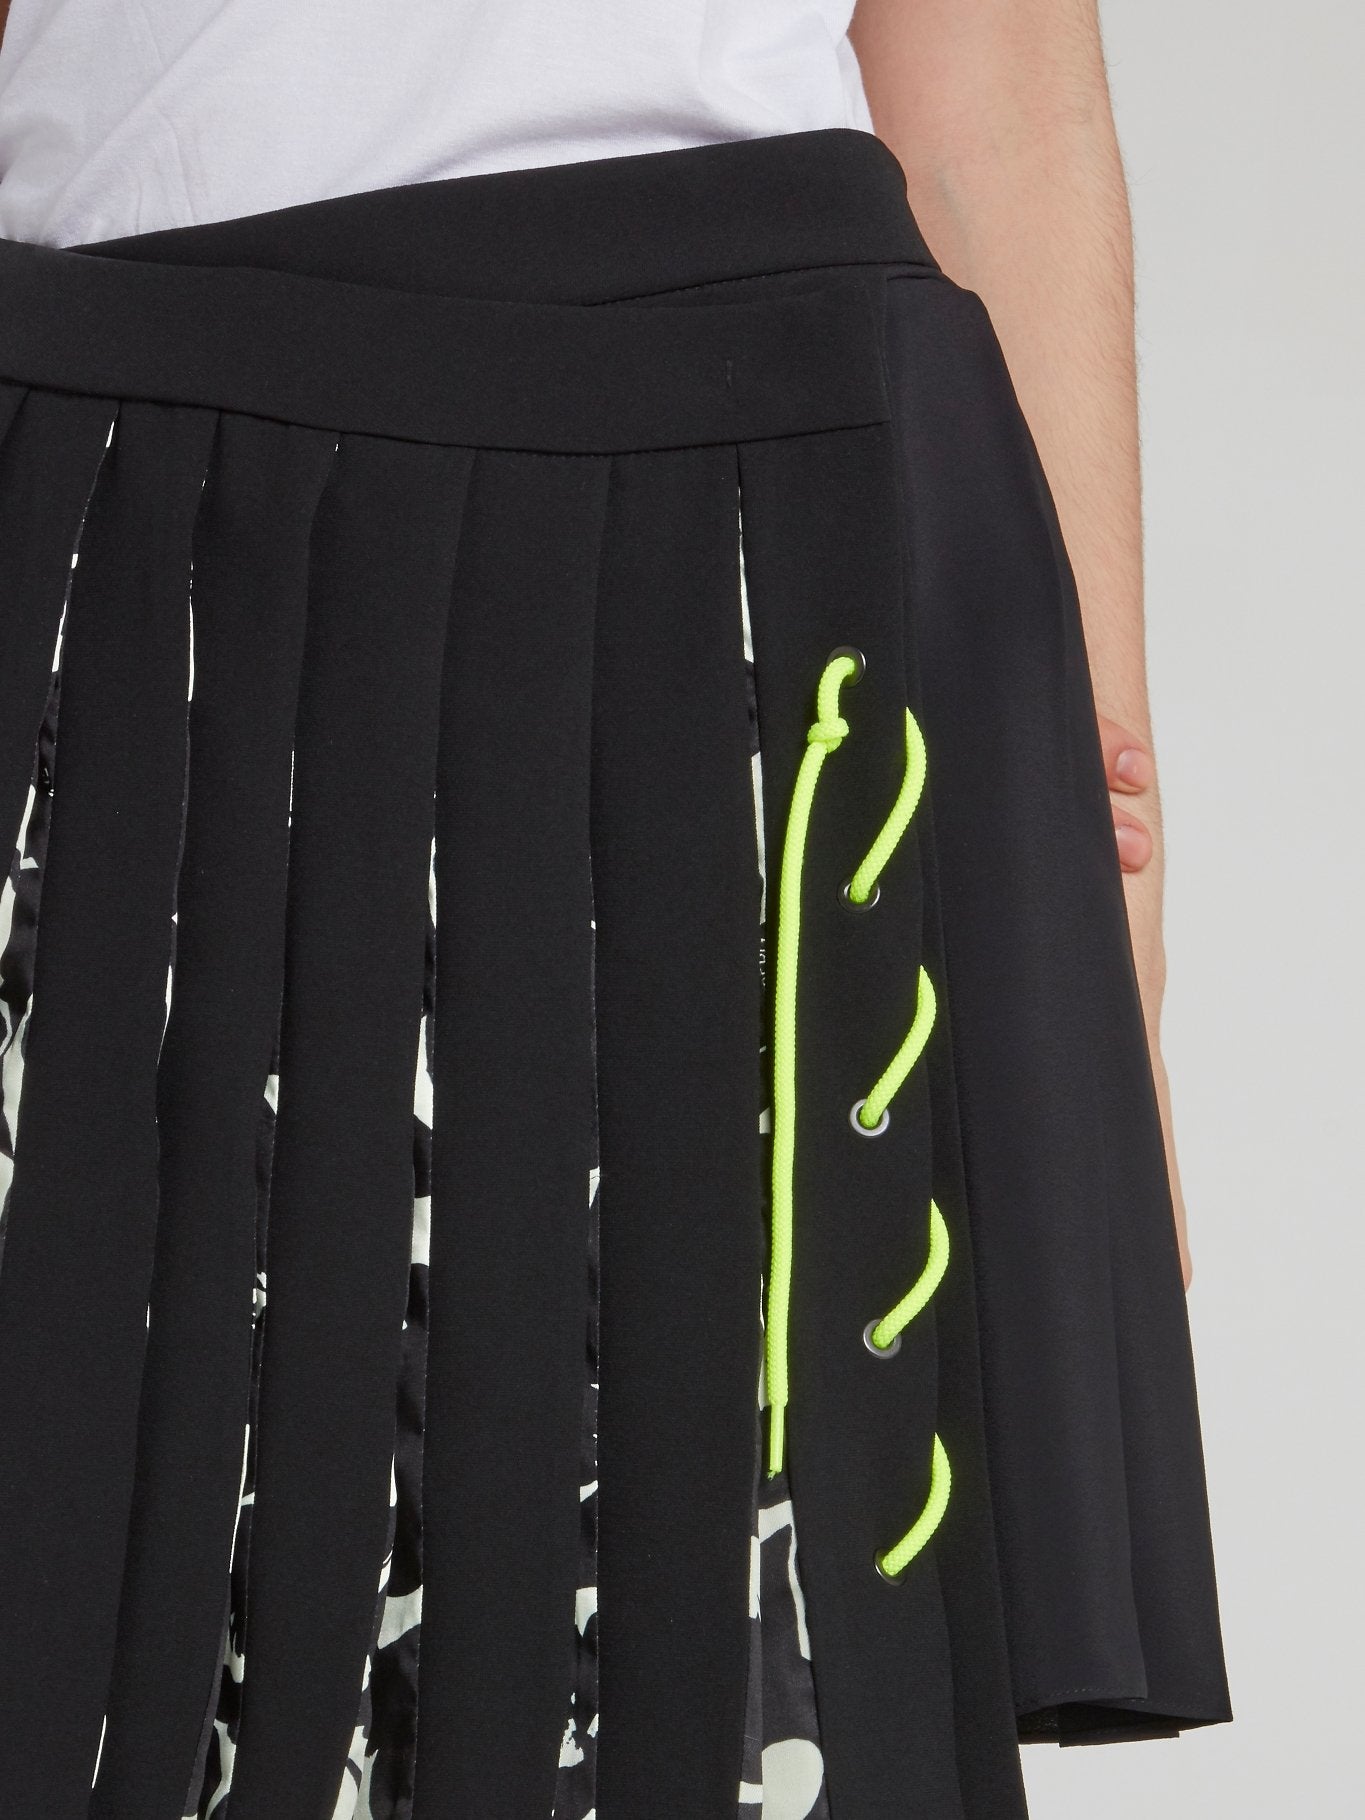 Black Pleated Wrap Mini Skirt